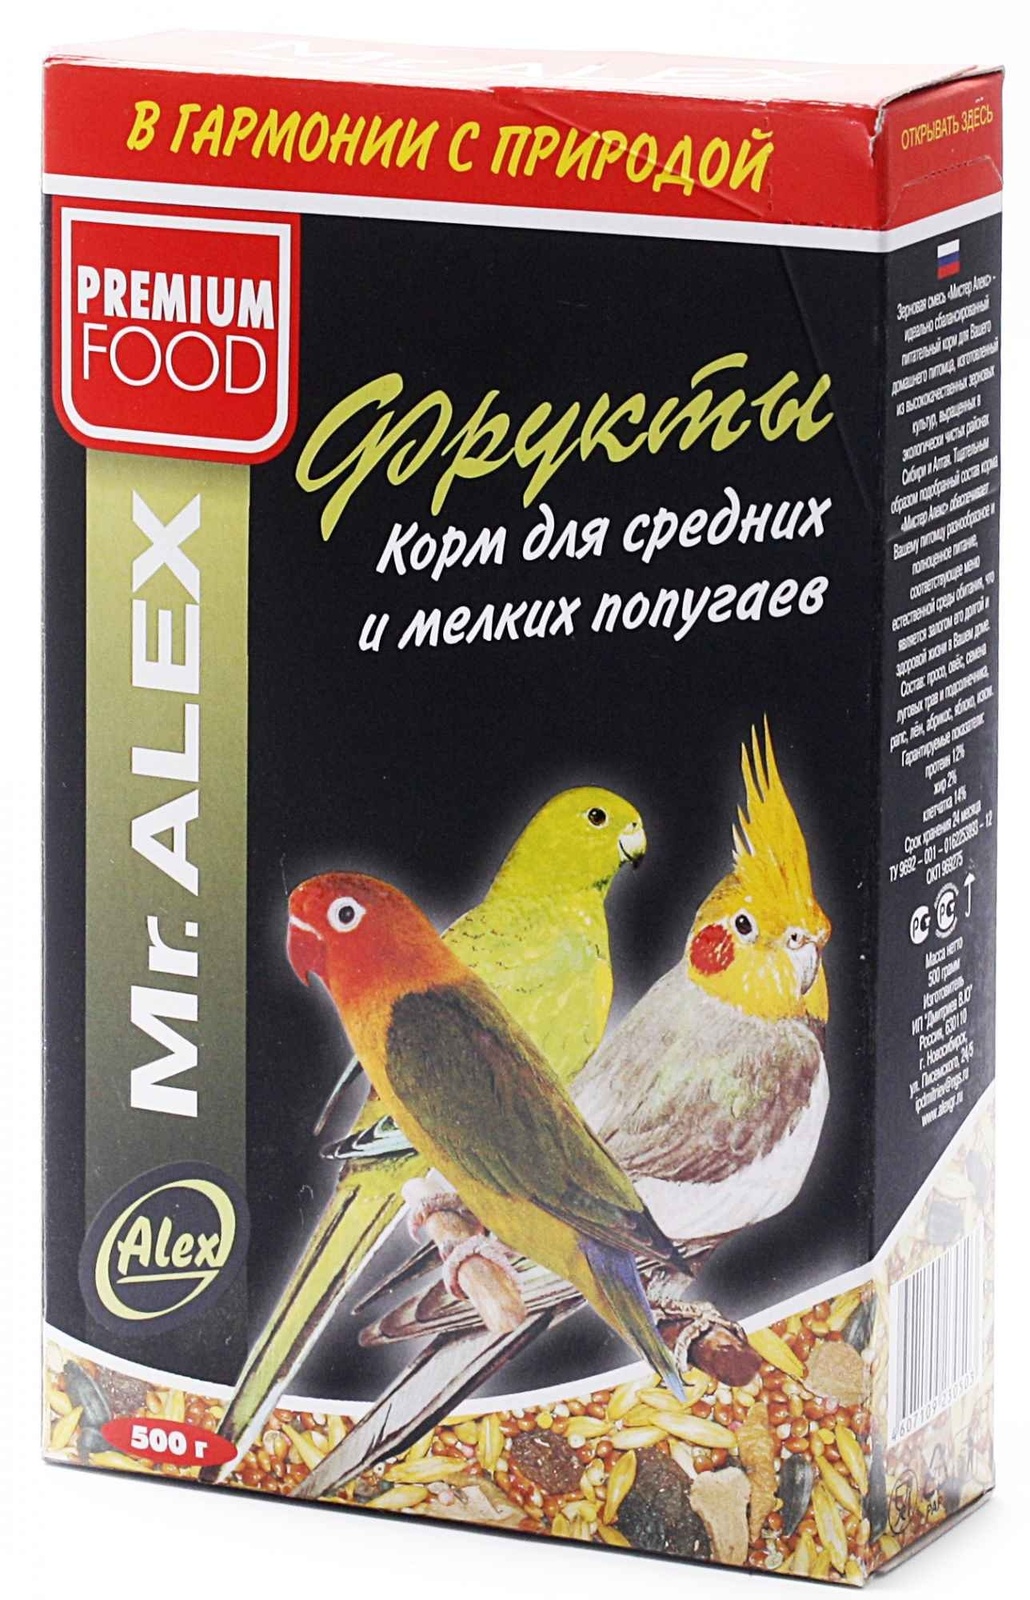 Mr.Alex Mr.Alex корм для средних и мелких попугаев Фрукты (500 г) mr alex mr alex корм для попугаев овощи 500 г